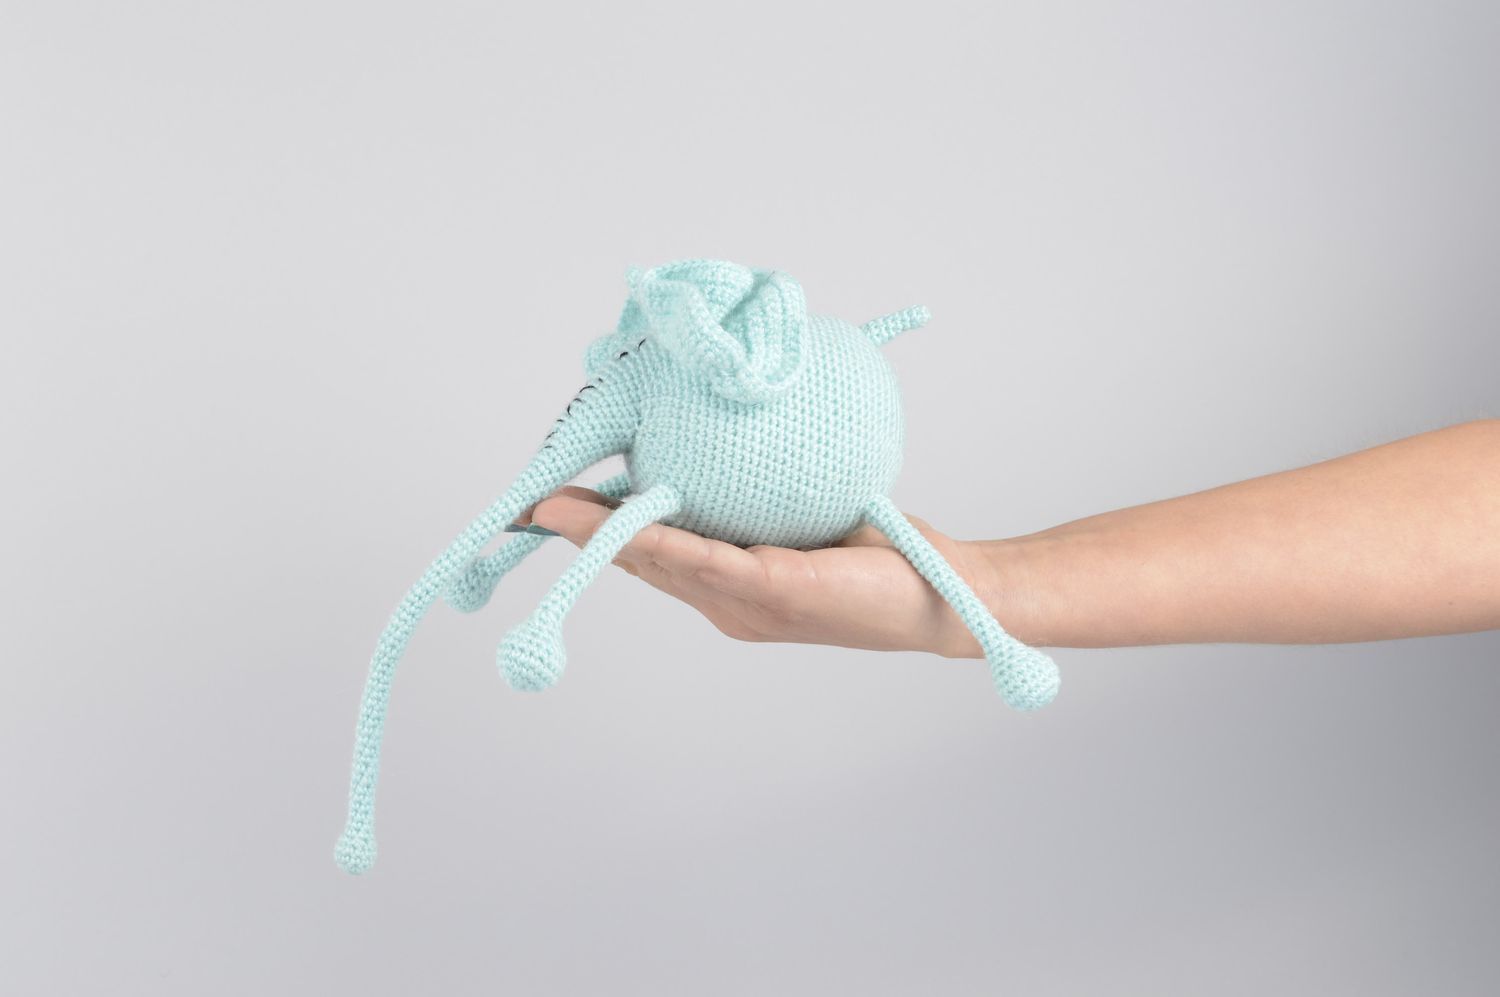 Мягкая игрушка ручной работы игрушка слоник голубой вязаная игрушка из акрила фото 4